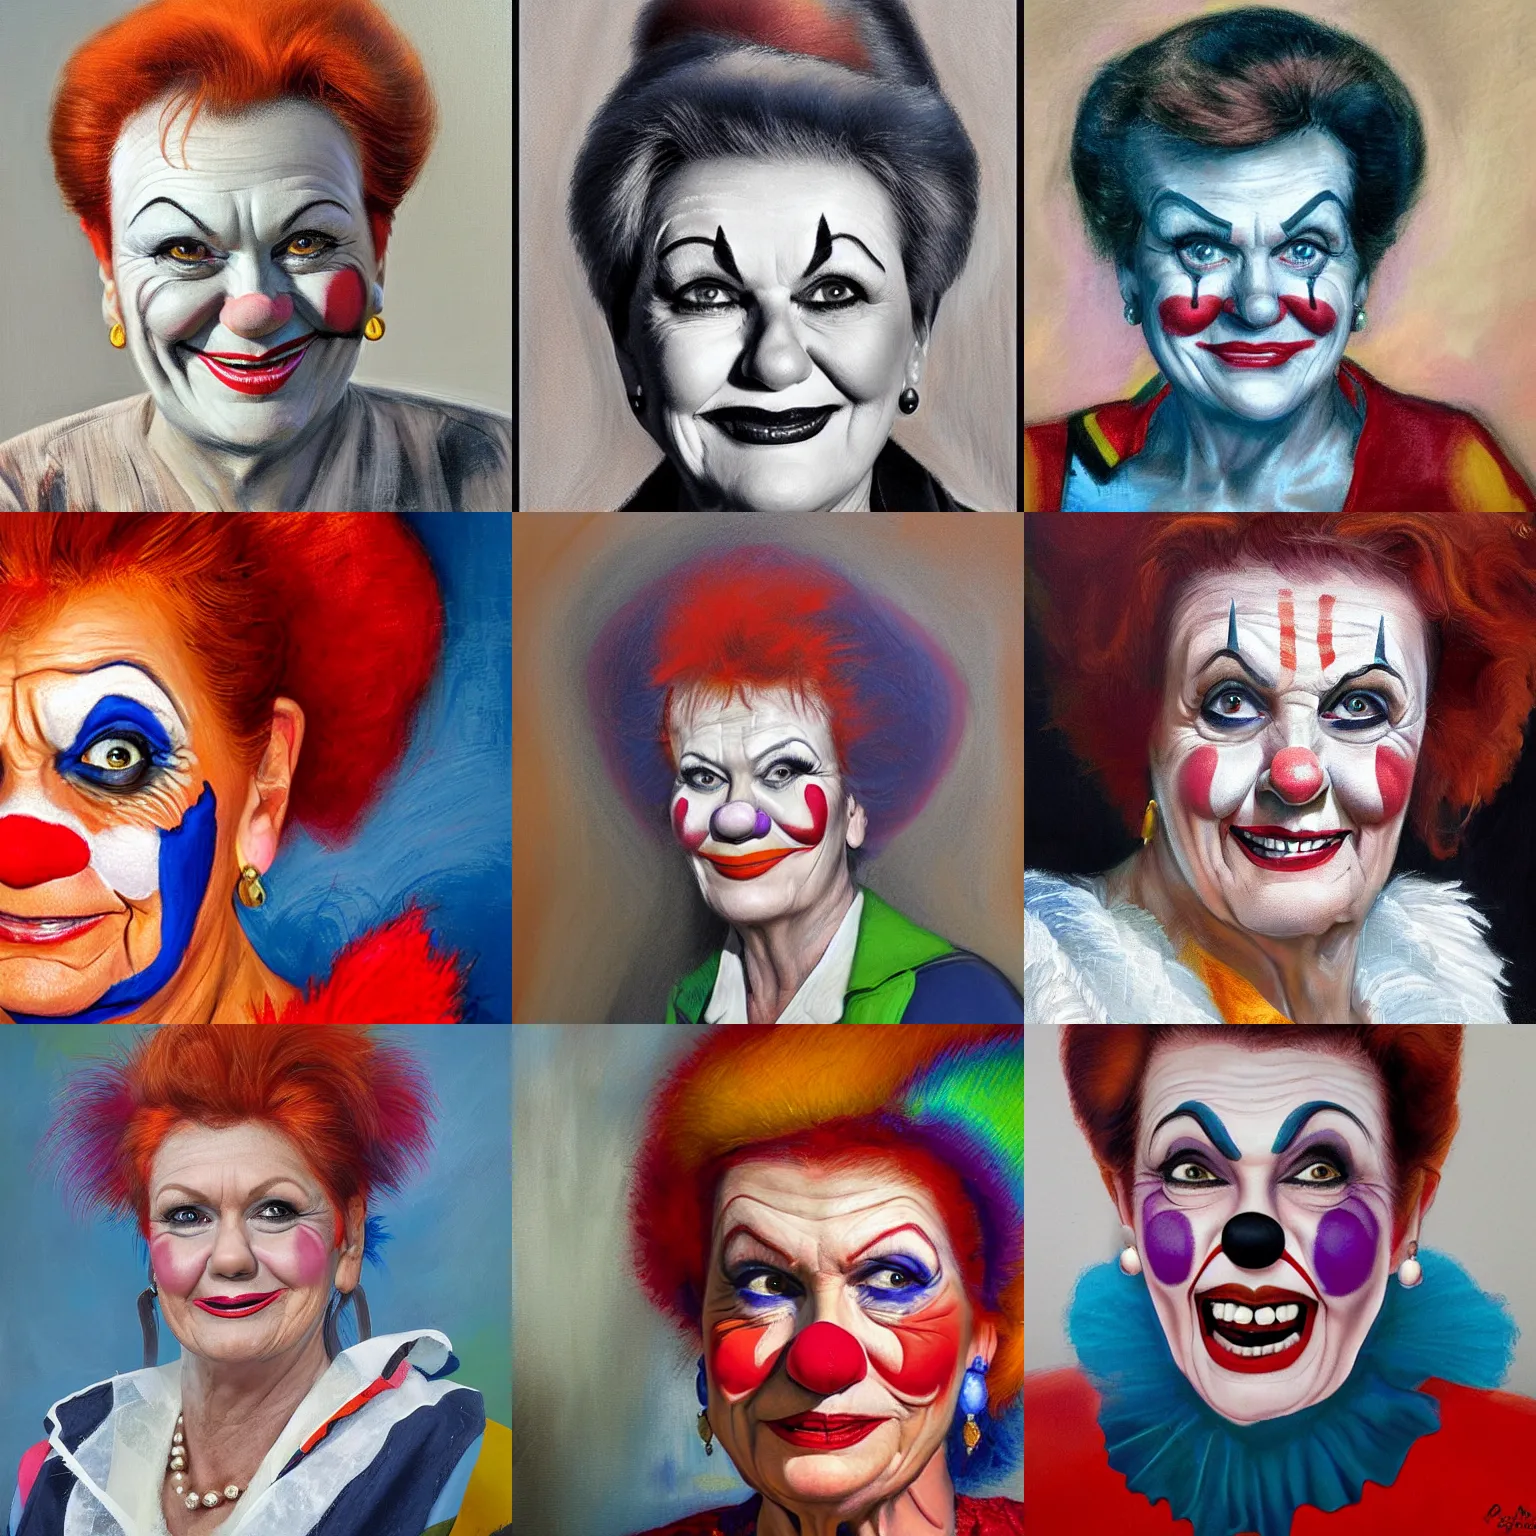 Prompt: Pauline Hanson as a clown, portrait by James Gurney, ultra detail